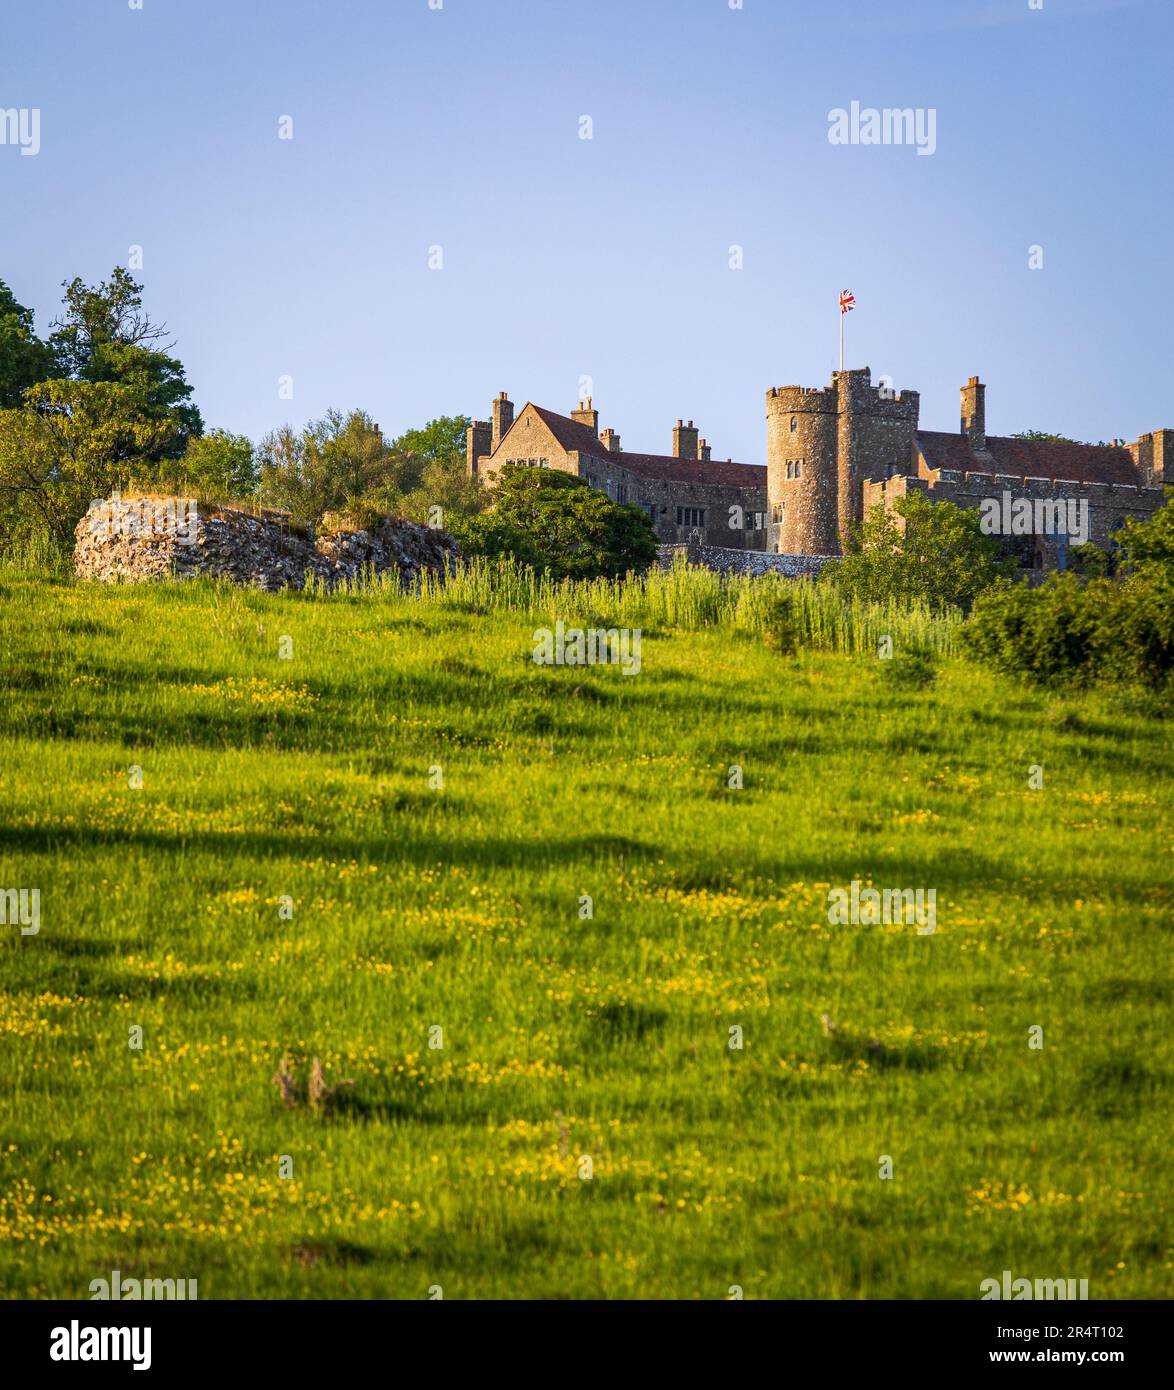 Vue sur le château de Lympne et les ruines du château romain Stutfall près de Hythe dans le Kent, au sud-est de l'Angleterre Banque D'Images